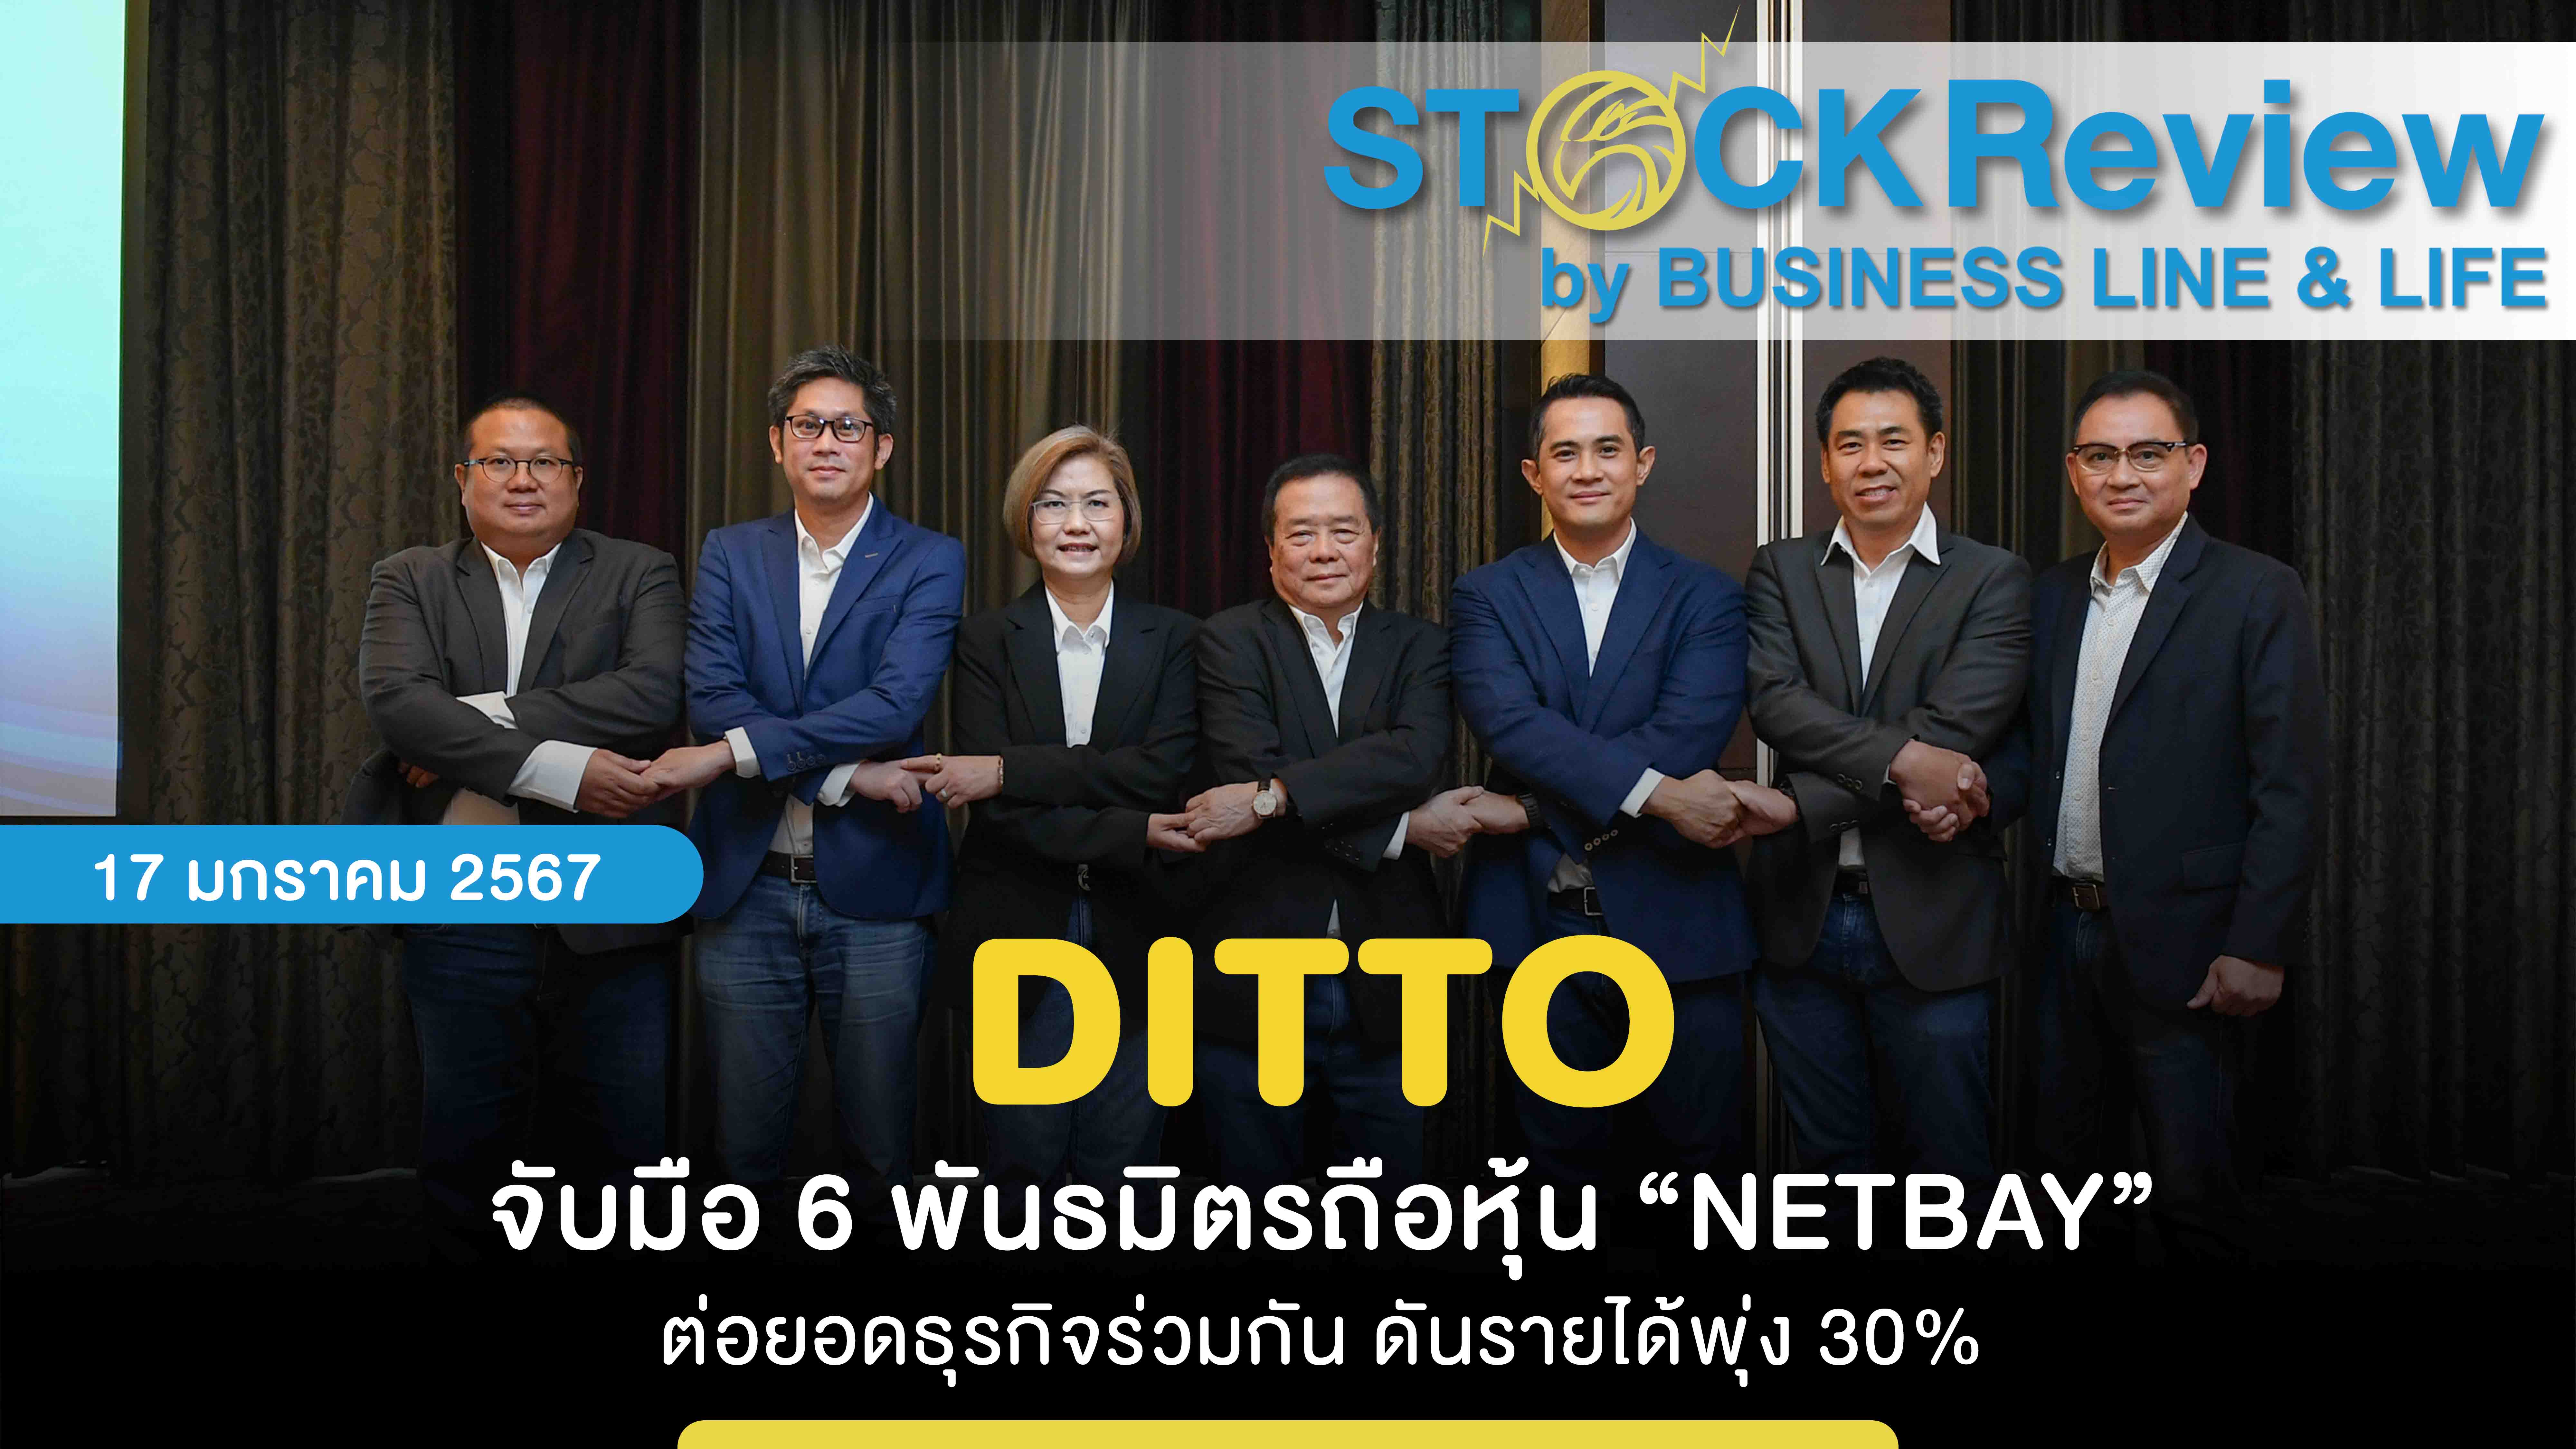 DITTO จับมือ 6 พันธมิตรถือหุ้น “NETBAY” ต่อยอดธุรกิจร่วมกัน ดันรายได้พุ่ง 30%